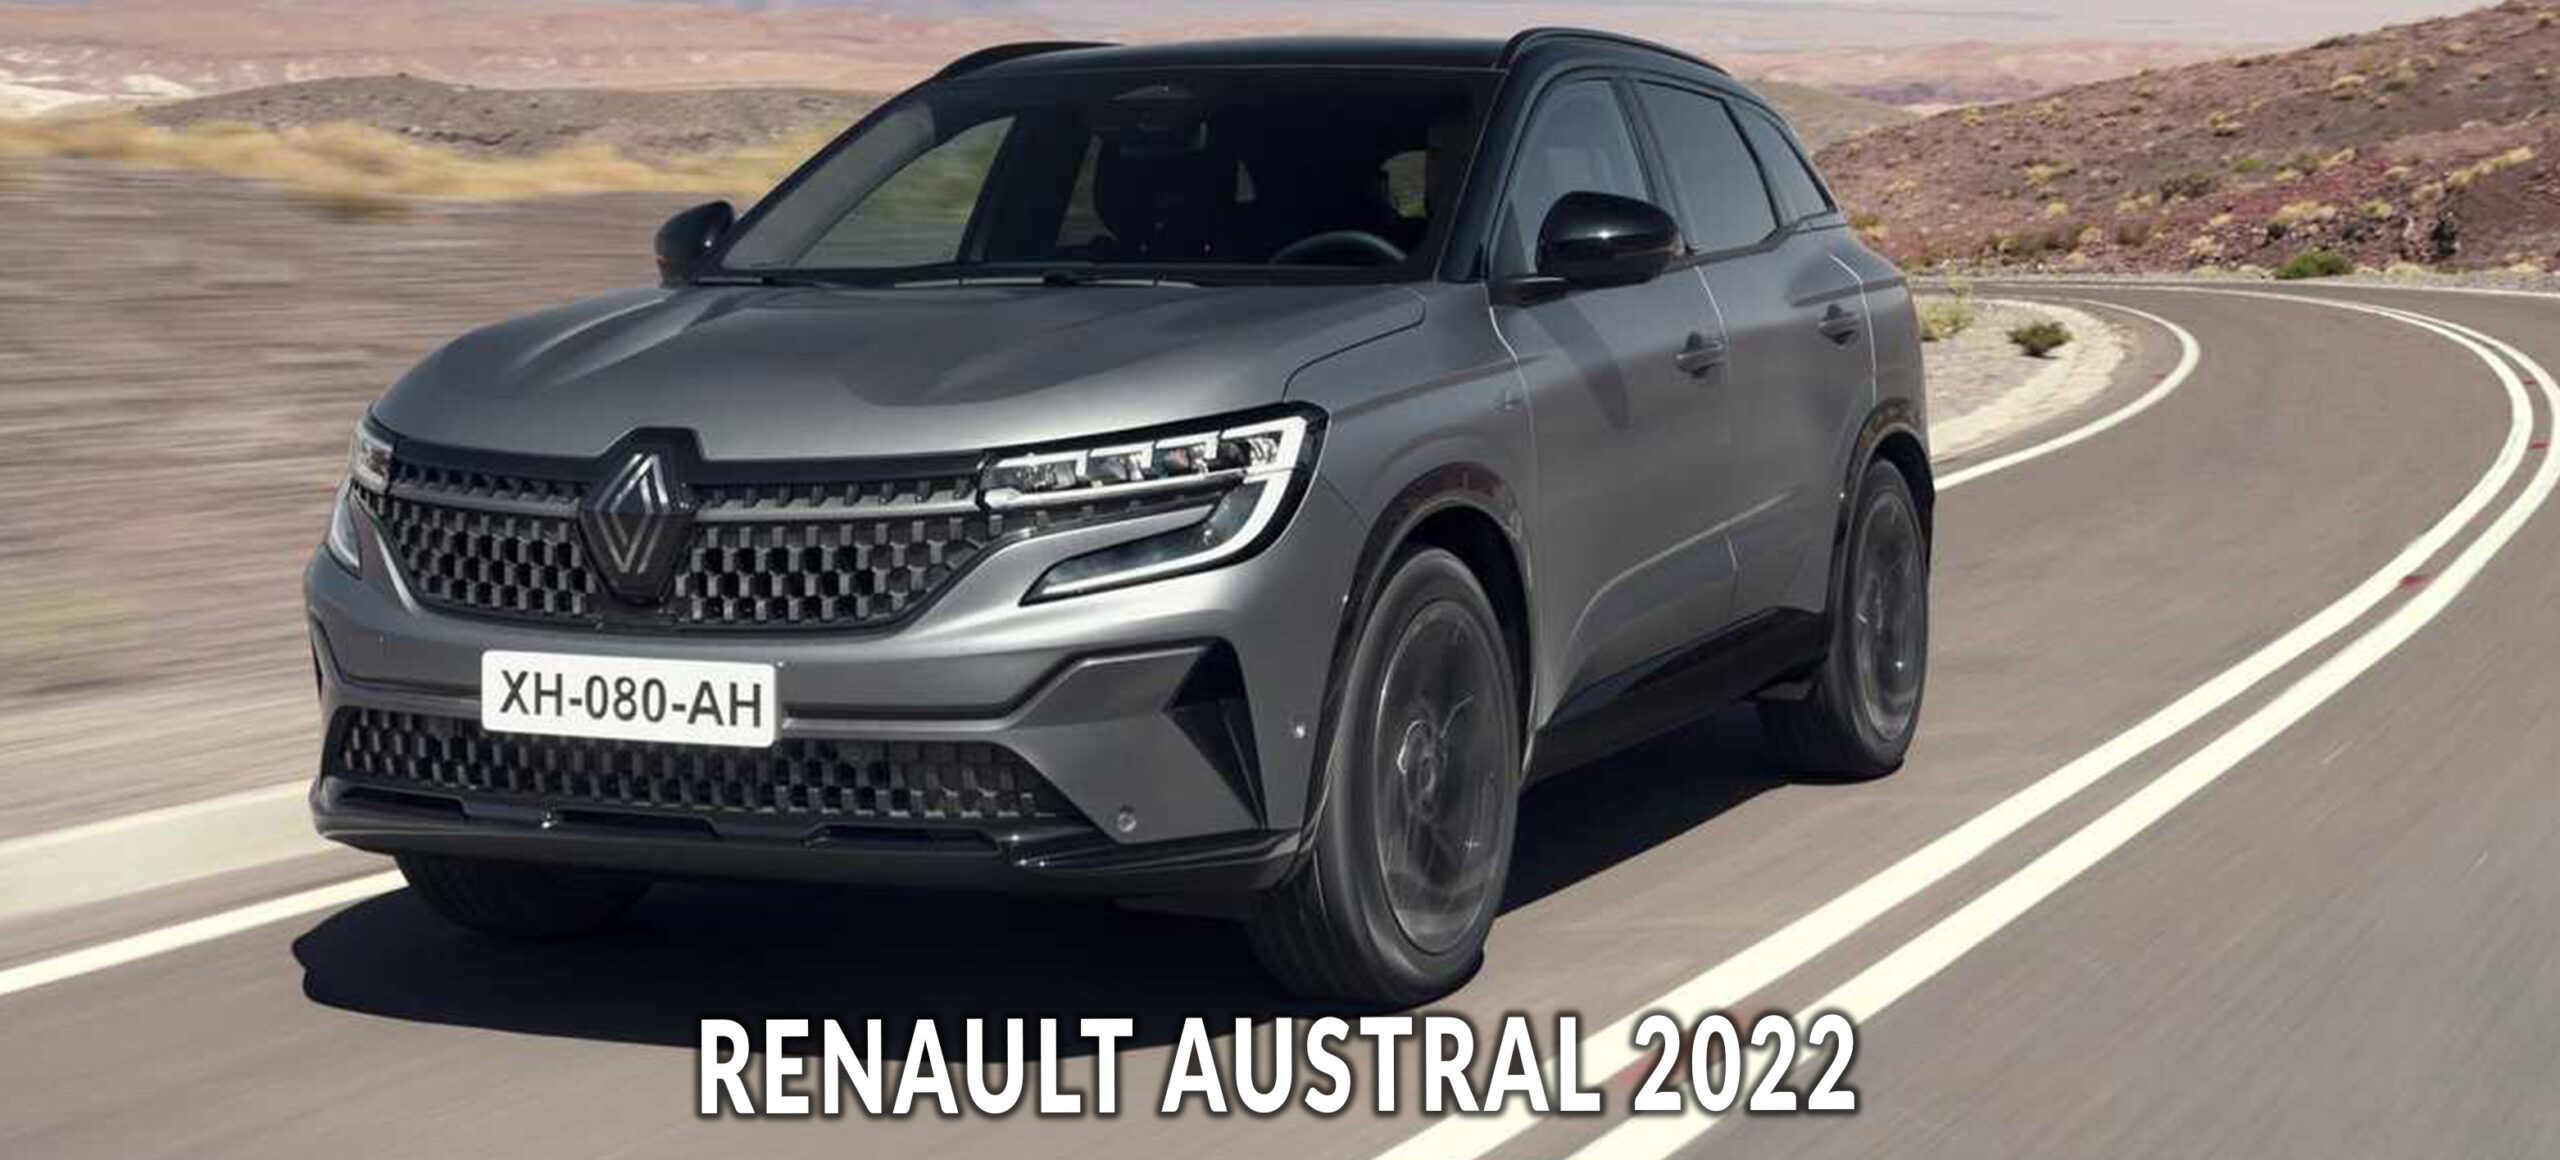 Renault Austral : révélation faite !